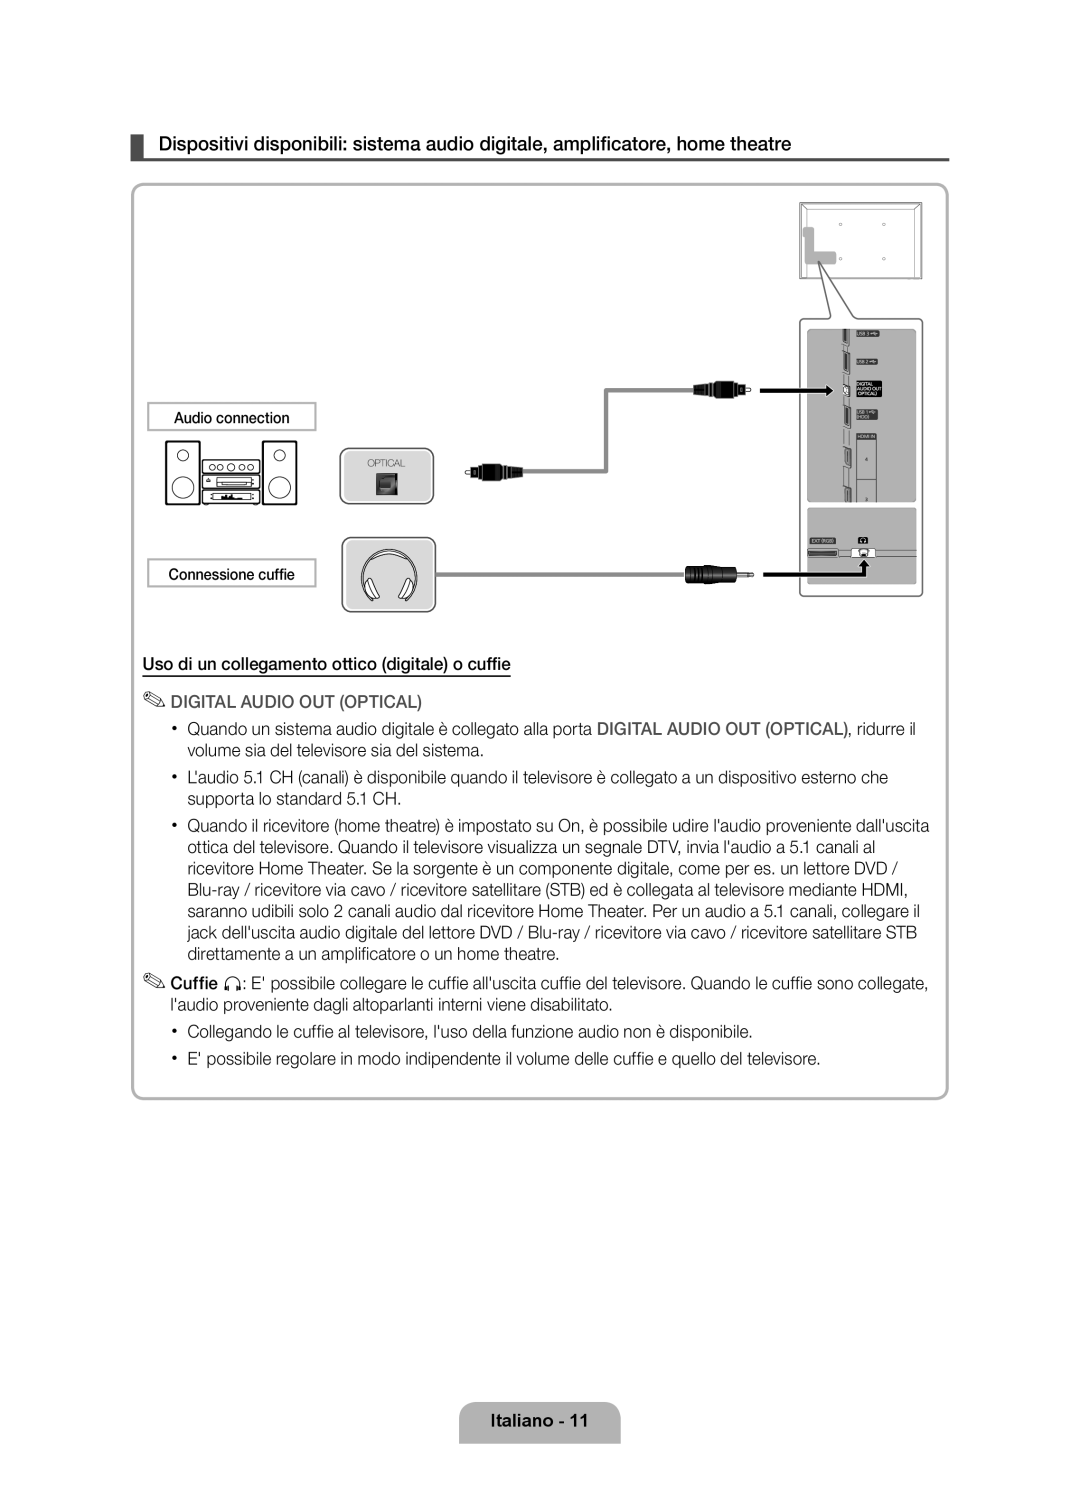 Samsung UE40D6530WSXXH manual Uso di un collegamento ottico digitale o cuffie, Digital Audio Out Optical, Italiano 